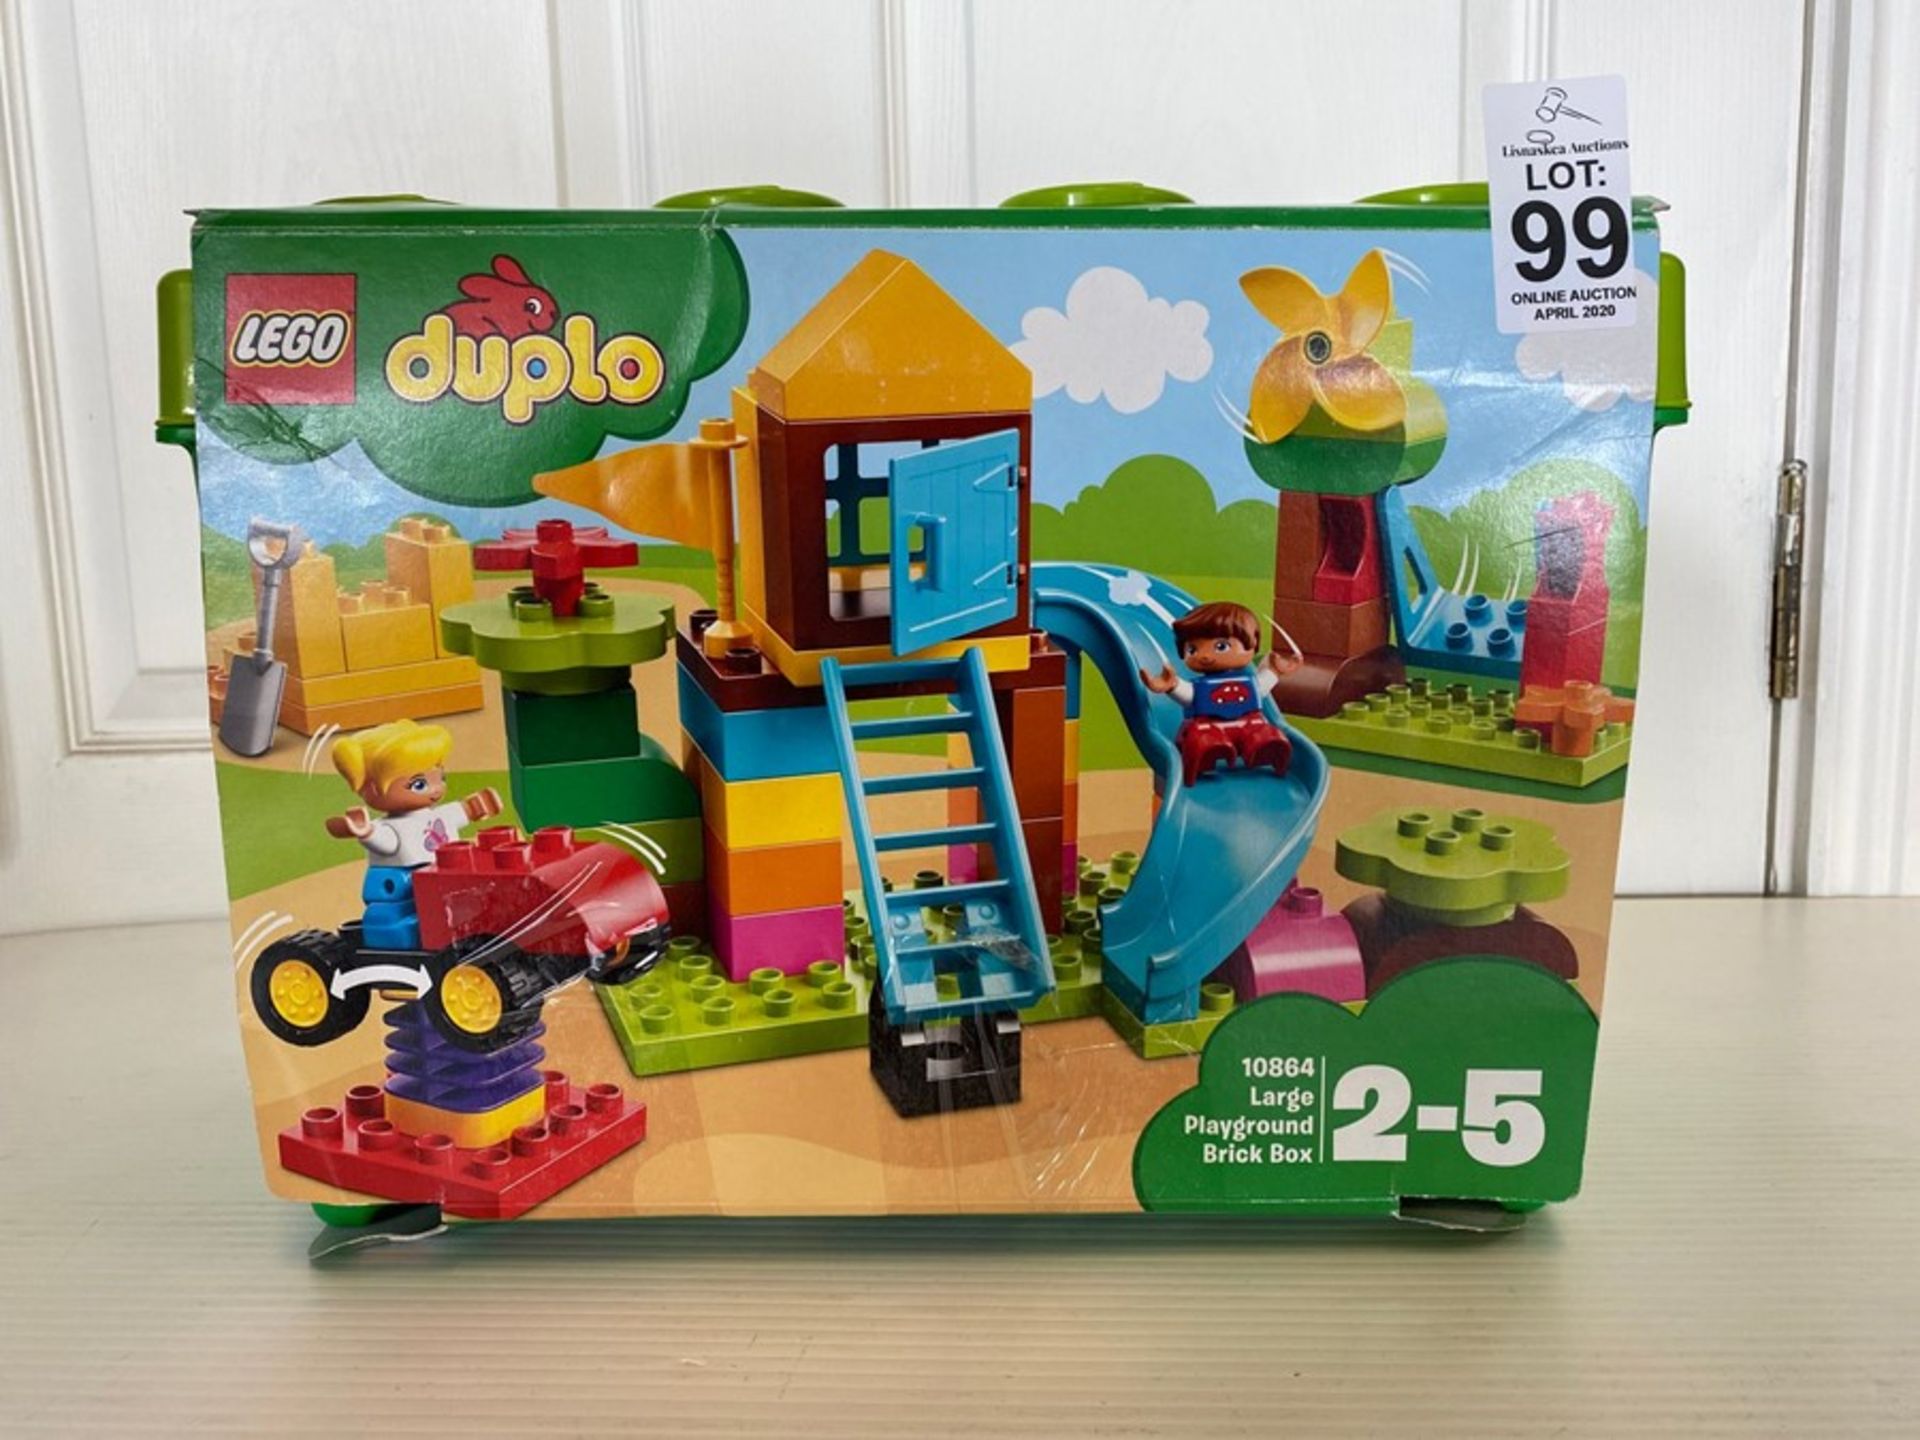 LEGO DUPLO LARGE PLAYGROUND BRICK BOX